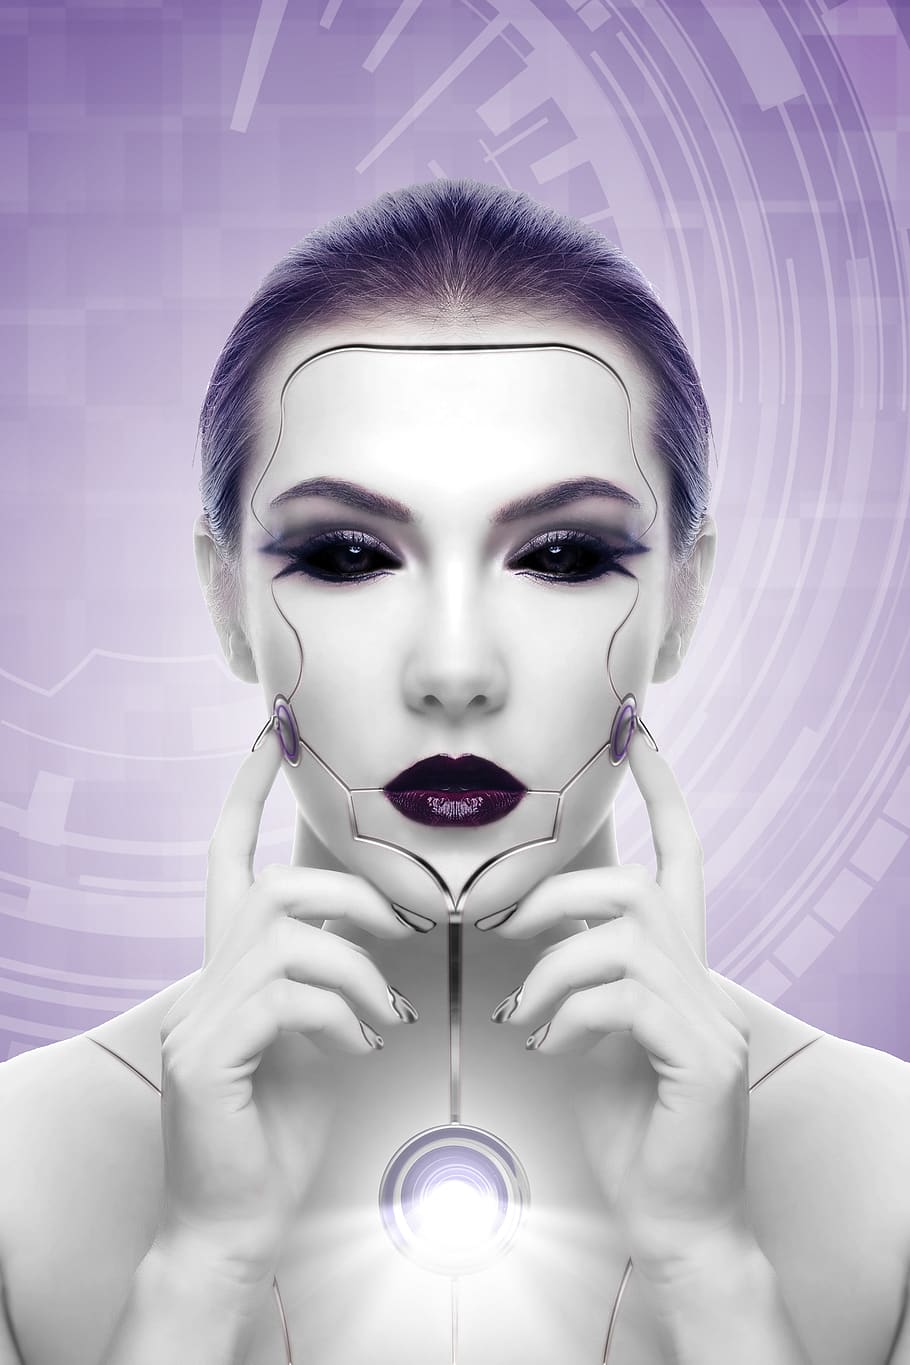 mujer, robot, inteligencia artificial, ciencia ficción, luz, fantasía, niña, el futuro, la belleza de la cara, alienígena